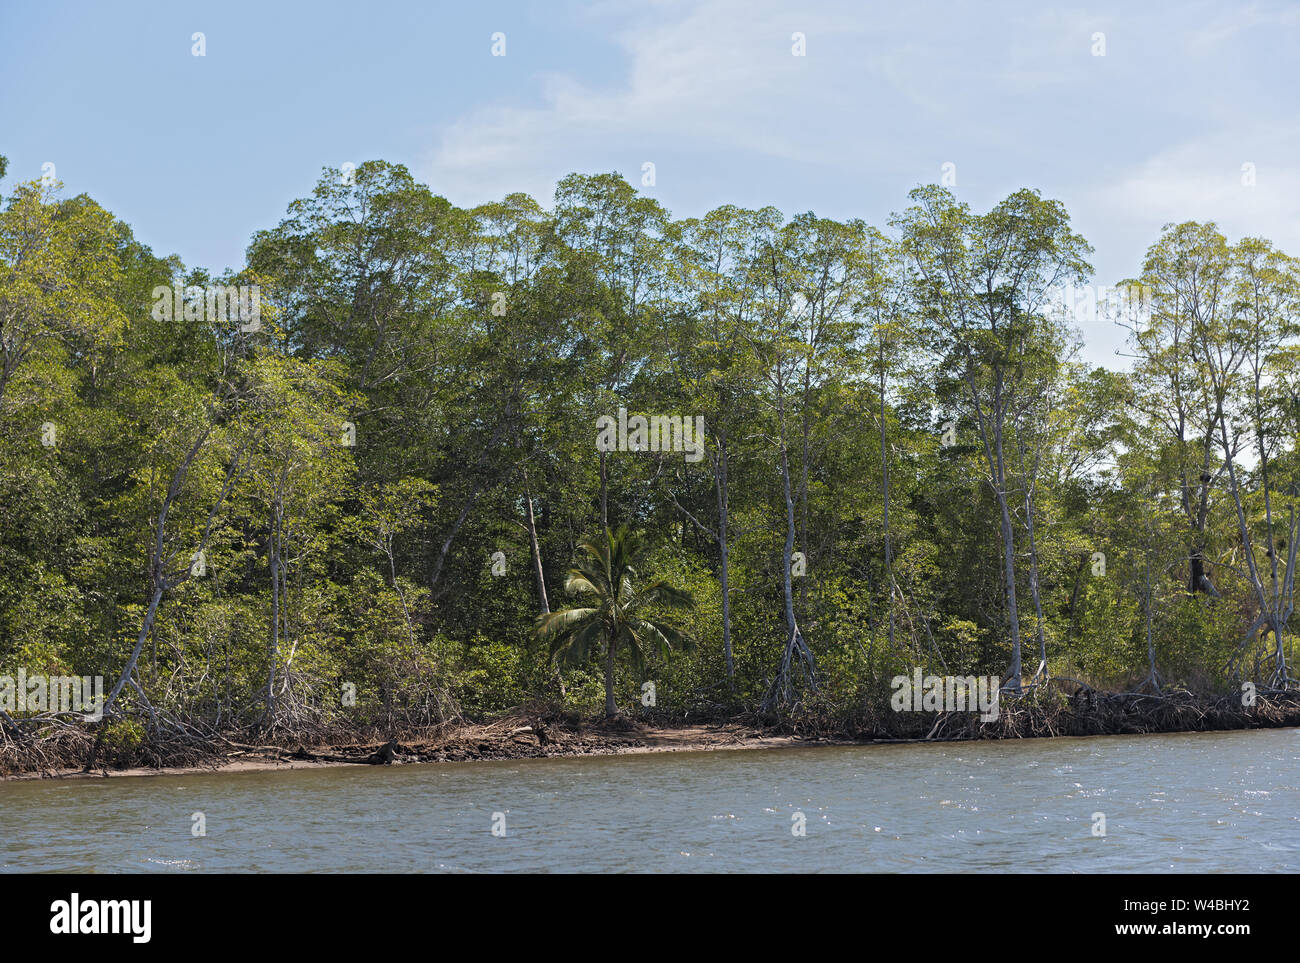 Forêt de mangroves sur les côtes de la Bahia de los Muertos à l'embouchure du Rio Panama Platanal Banque D'Images